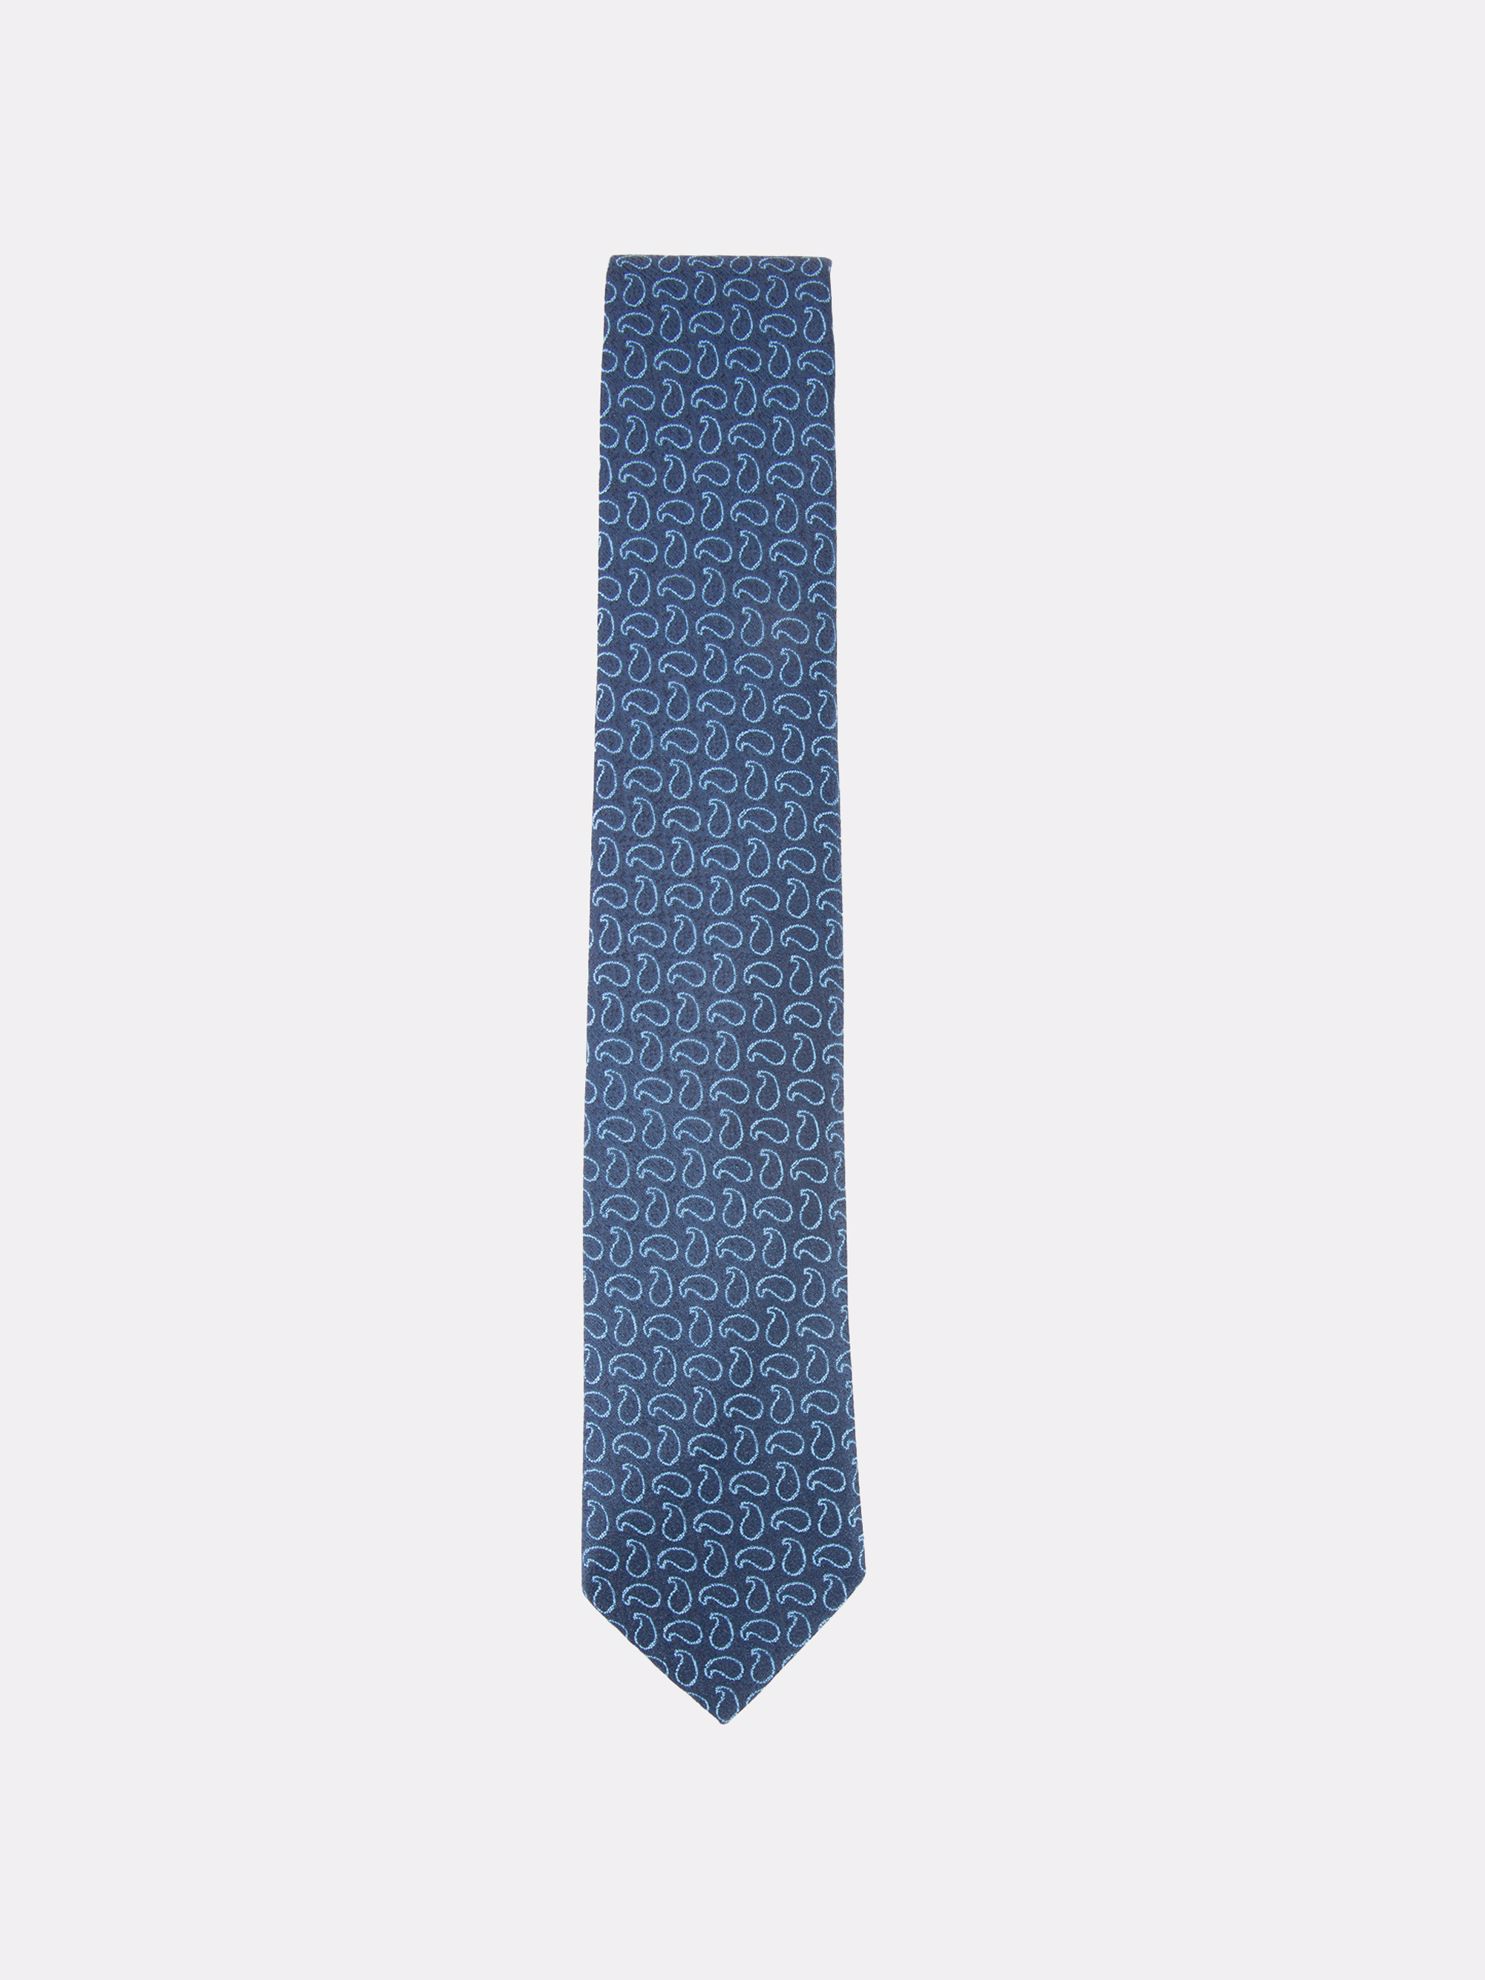 Karaca Erkek Kravat-Mavi. ürün görseli